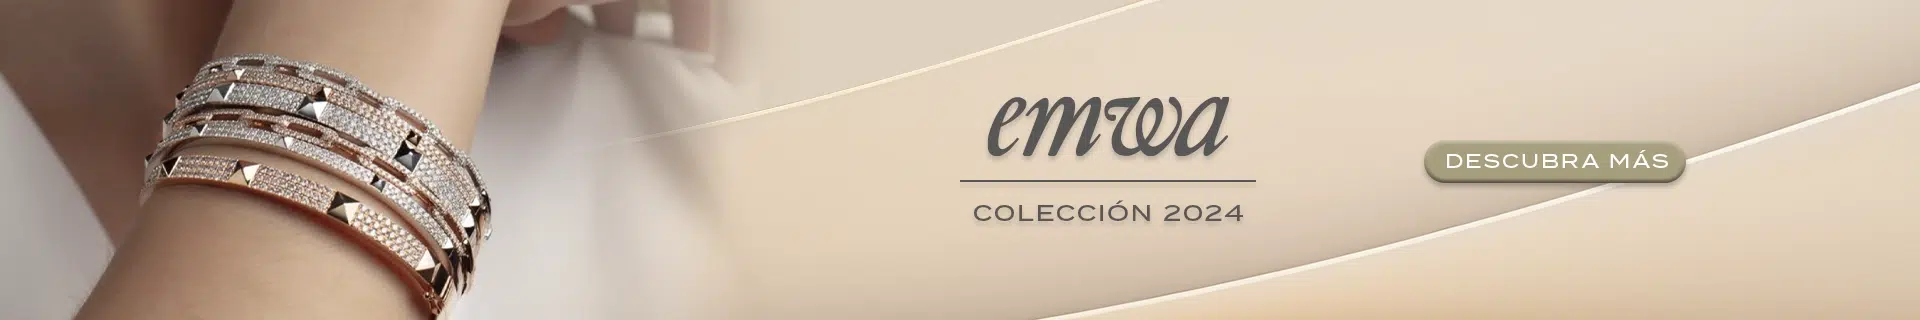 Descubra el catálogo de piezas 2024 en EMWA y conozca las colecciones de joyería y relojería disponibles.